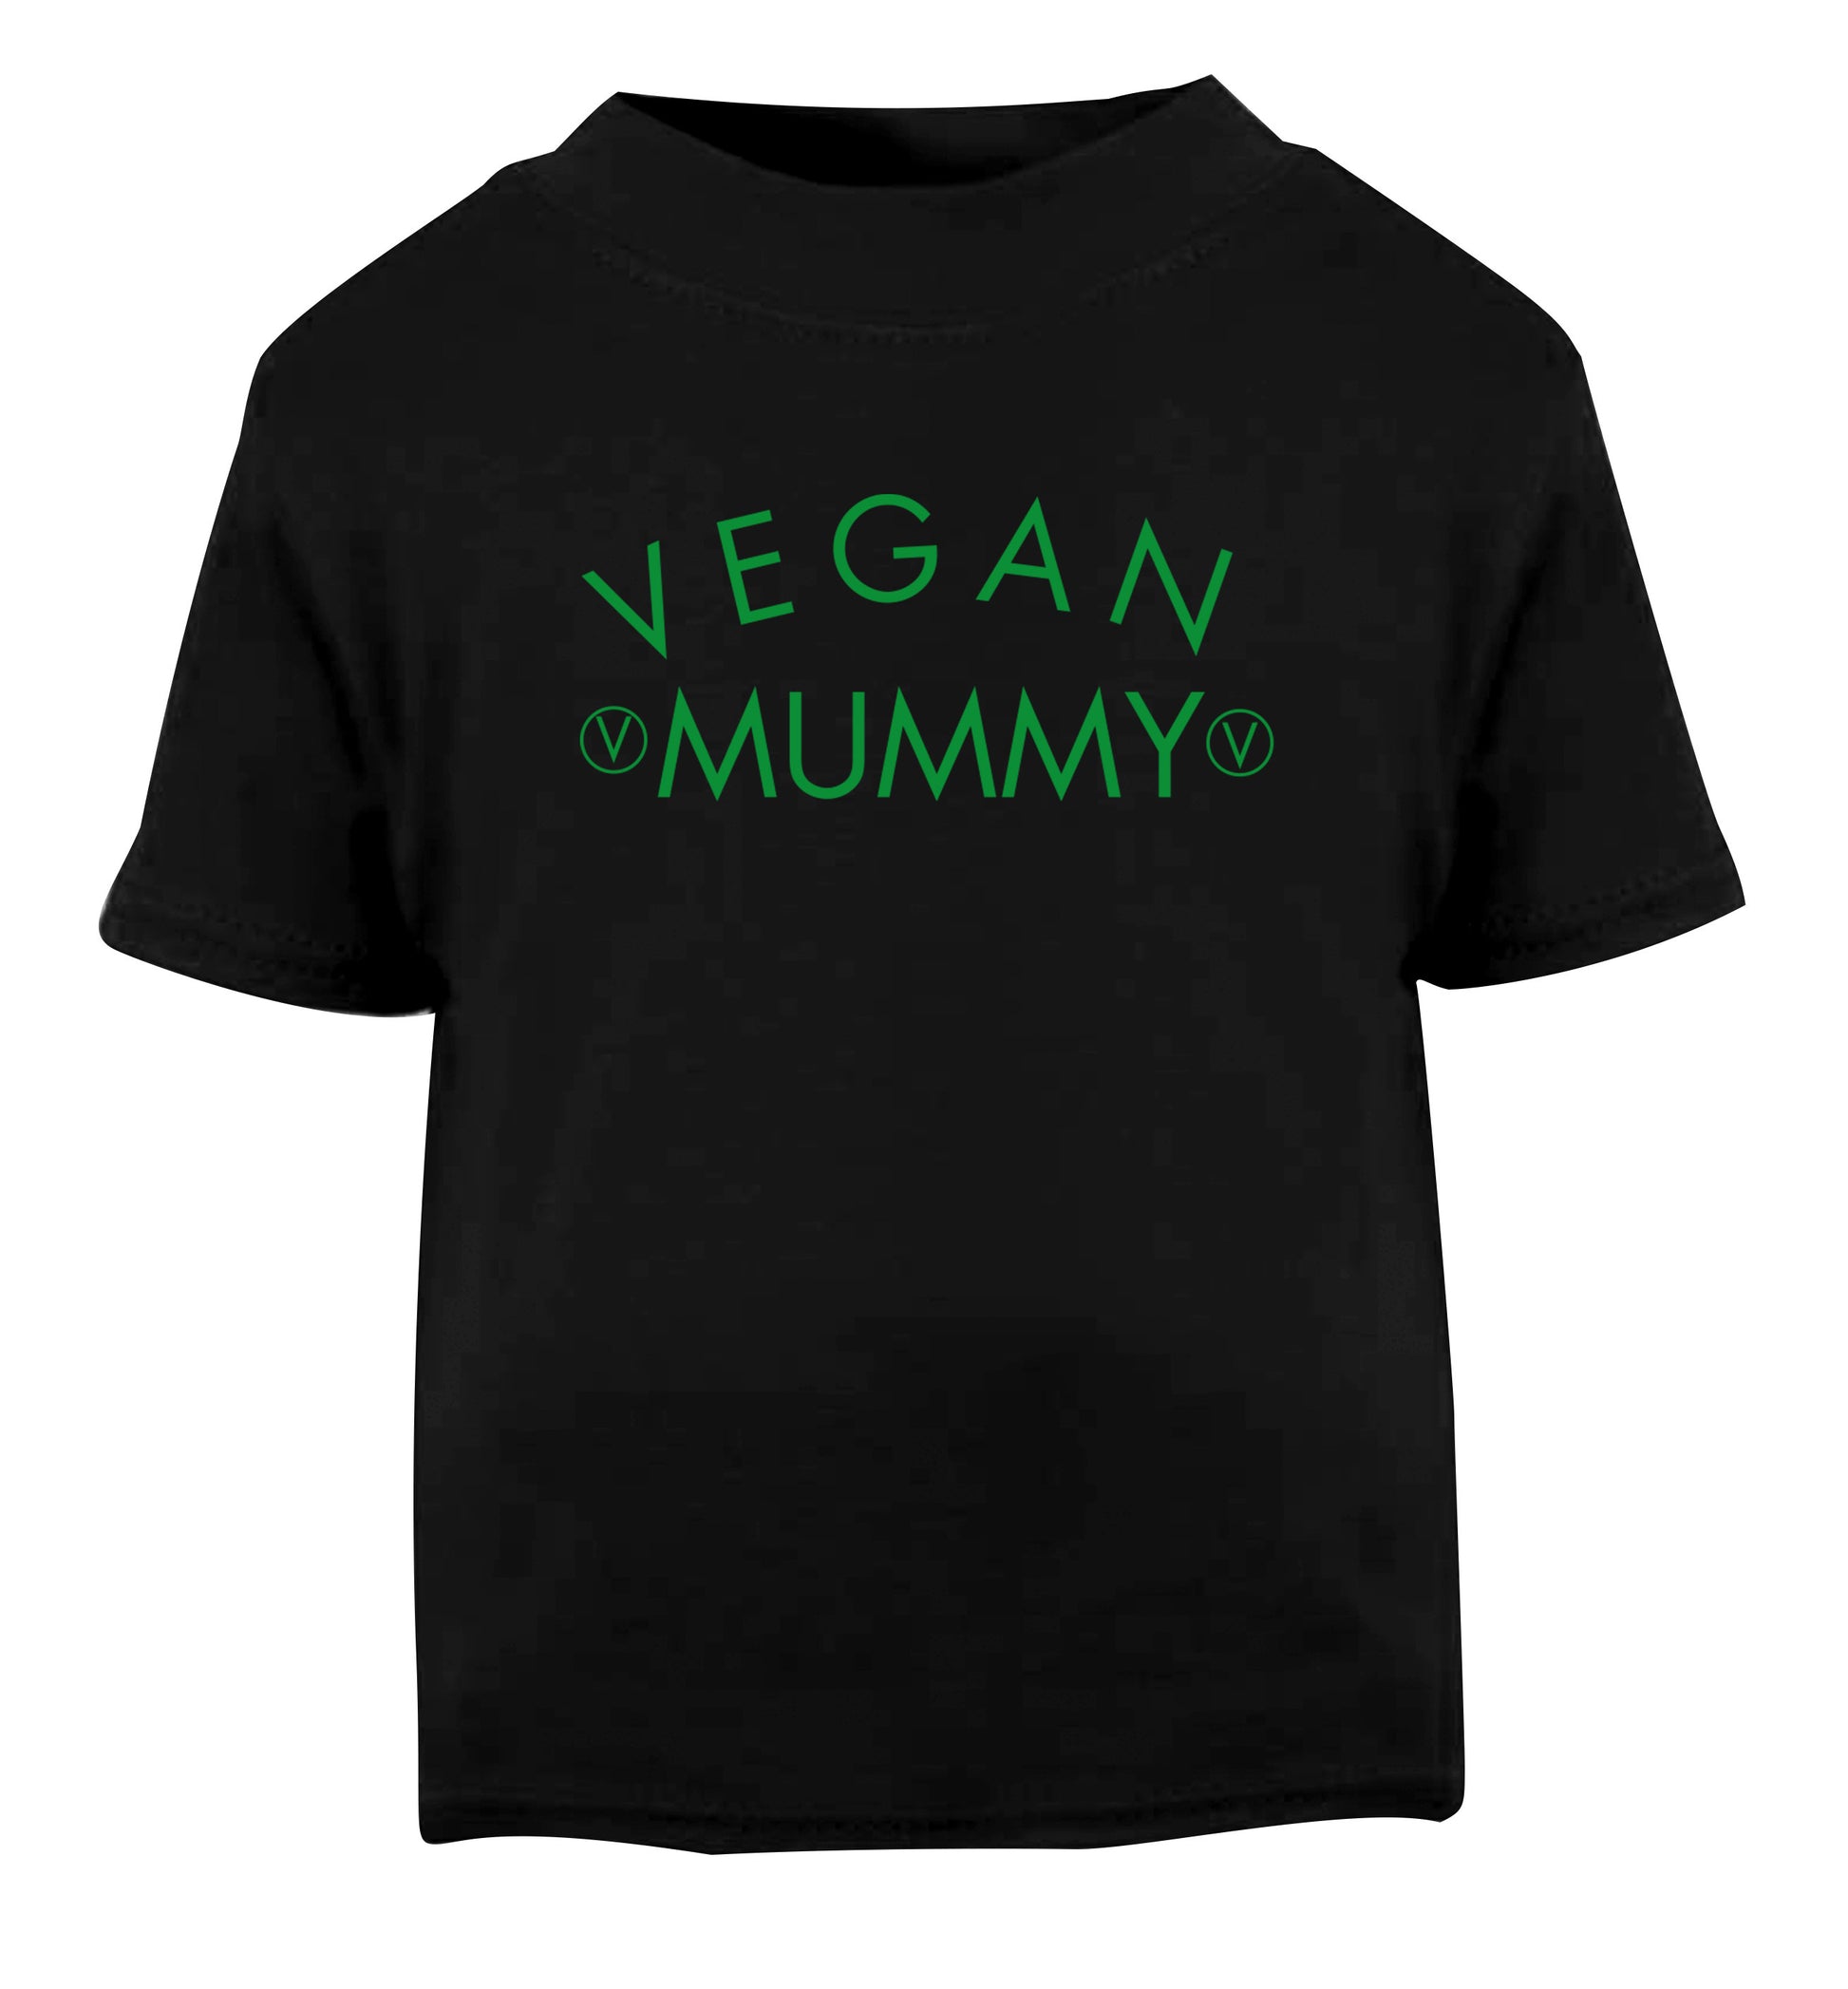 Vegan mummy Black Baby Toddler Tshirt 2 years